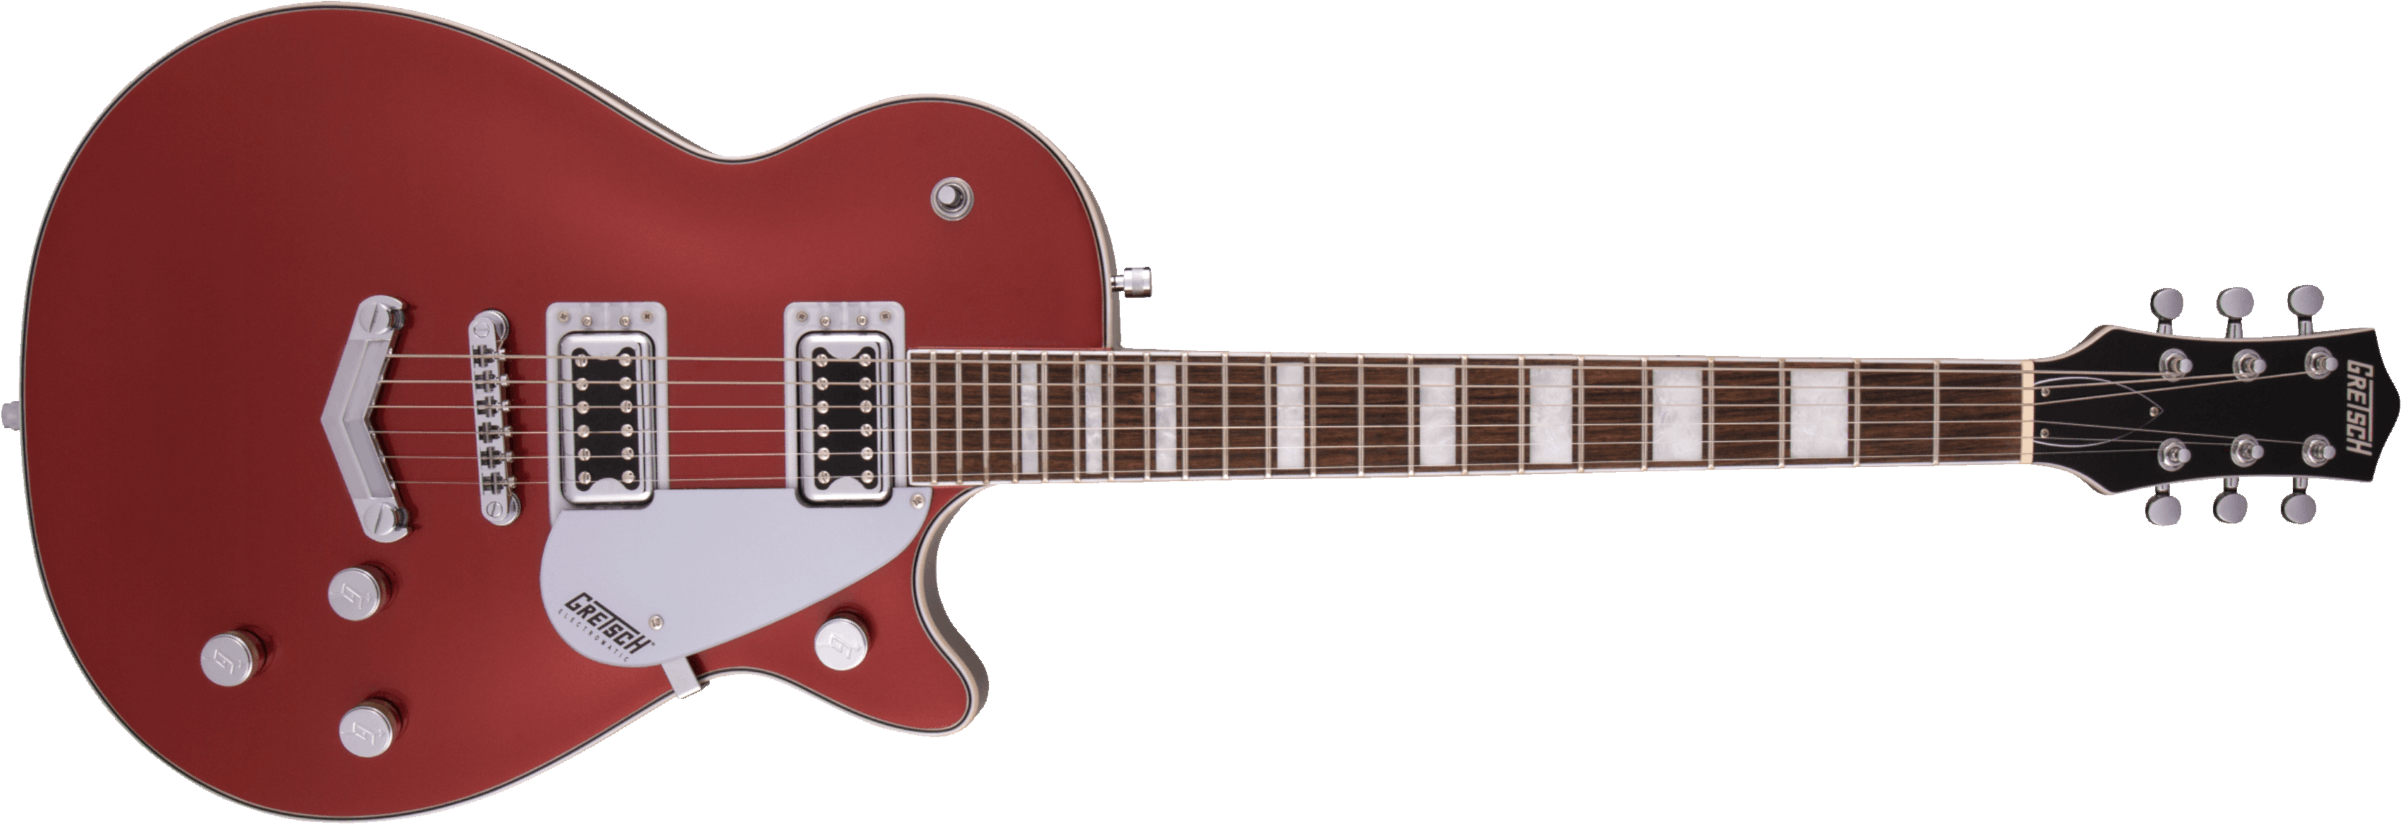 Gretsch G5220 Electromatic Jet Bt V-stoptail Hh Ht Lau - Firestick Red - Enkel gesneden elektrische gitaar - Main picture